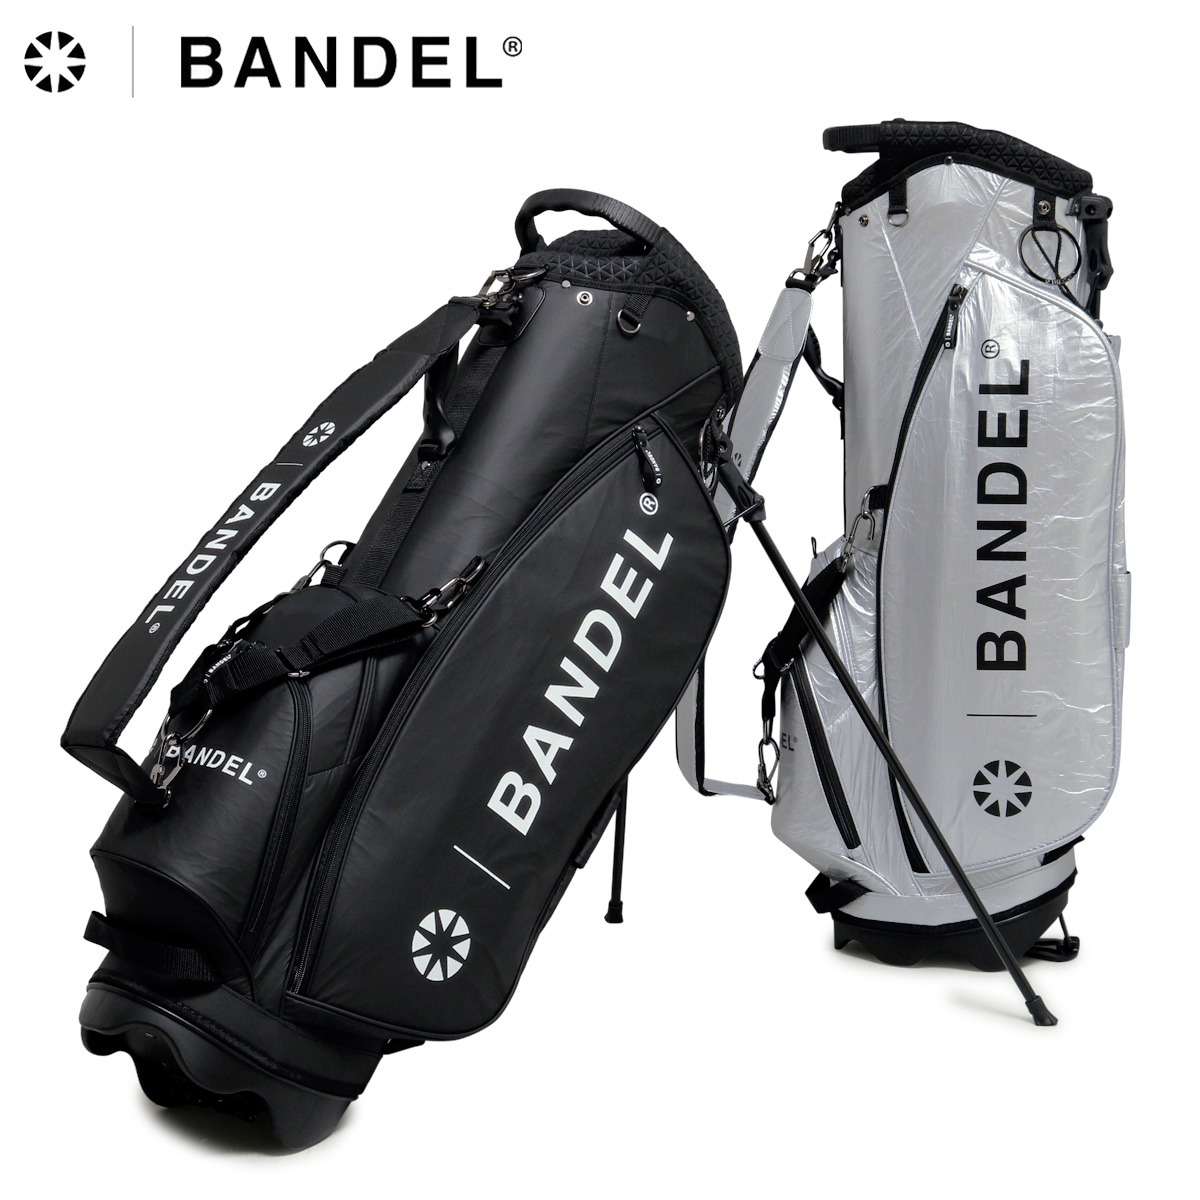 バンデル ゴルフ キャディバッグ スタンド式 9.5型 46インチ対応 メンズ BGI-3SCB BANDEL CRUMPLE STAND CADDY  BAG ゴルフバッグ